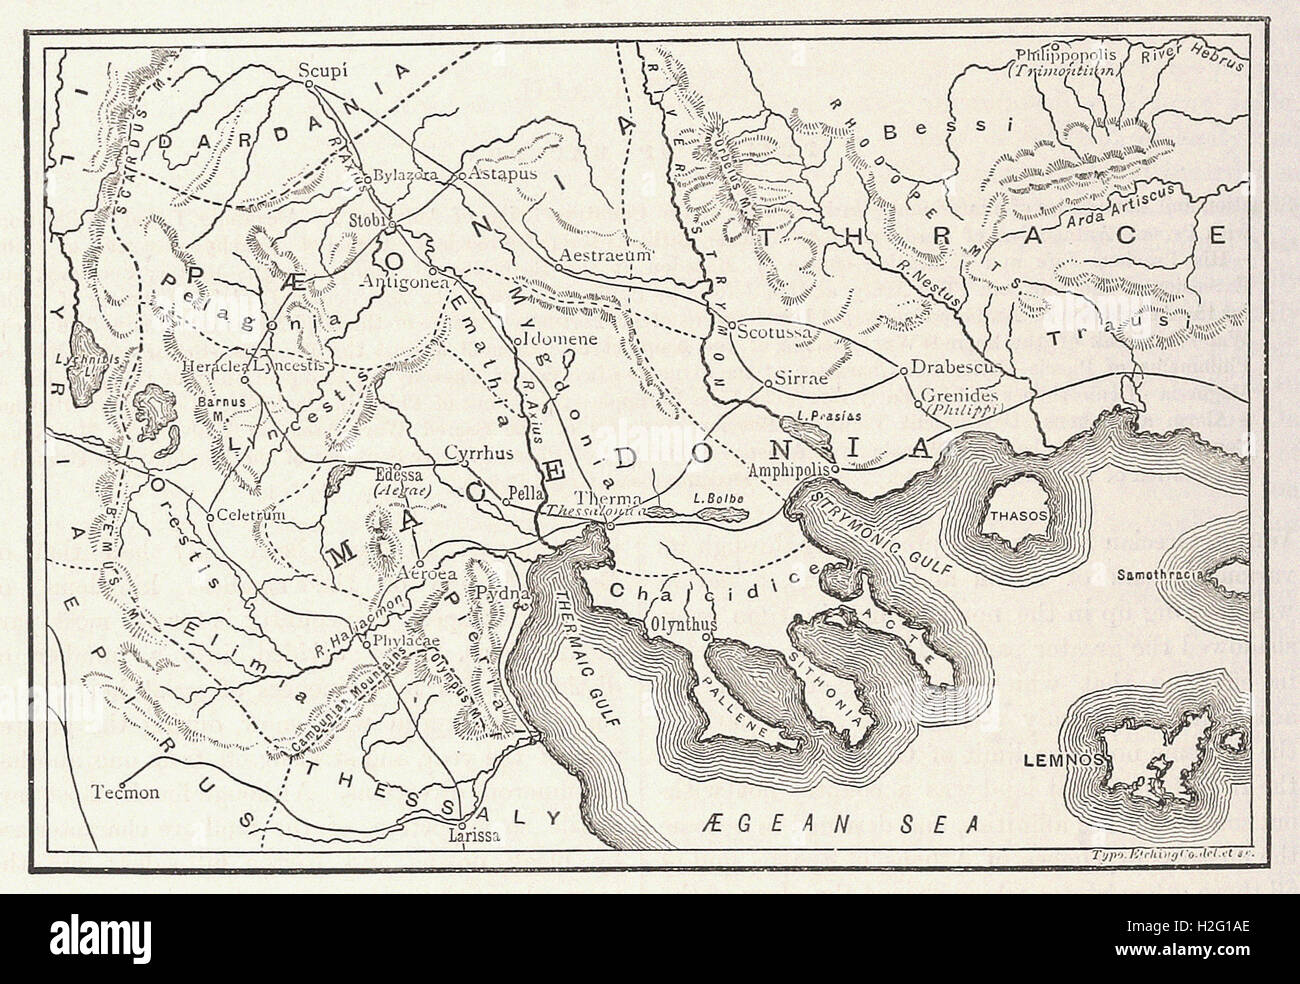 Carte de la Macédoine et de la districts adjacents - de 'Cassell's Illustrated Histoire universelle" - 1882 Banque D'Images